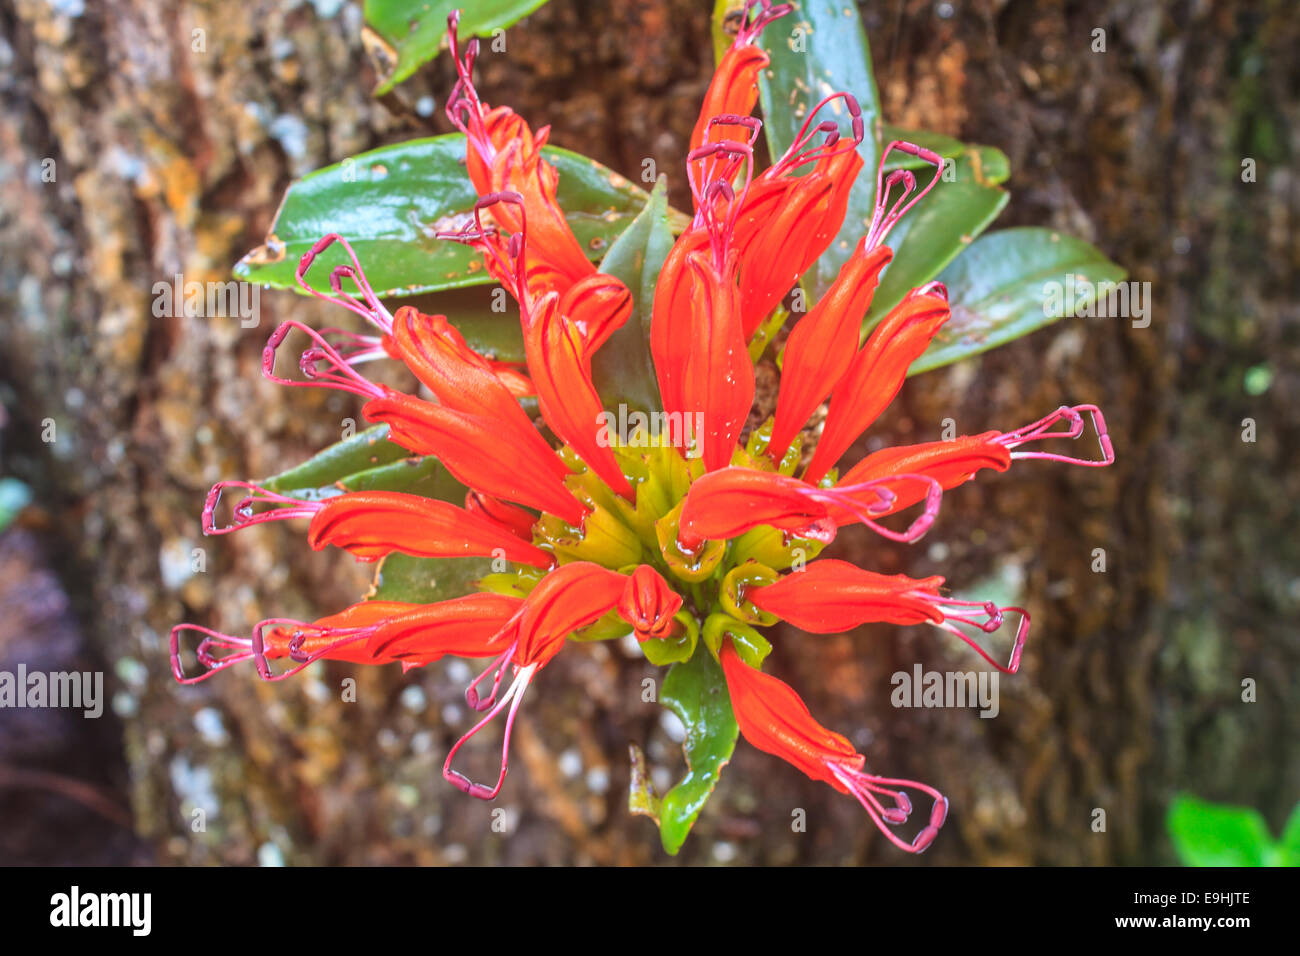 Aeschynanthus Hildebrandii, wild flowers in forest, Thailand Stock Photo